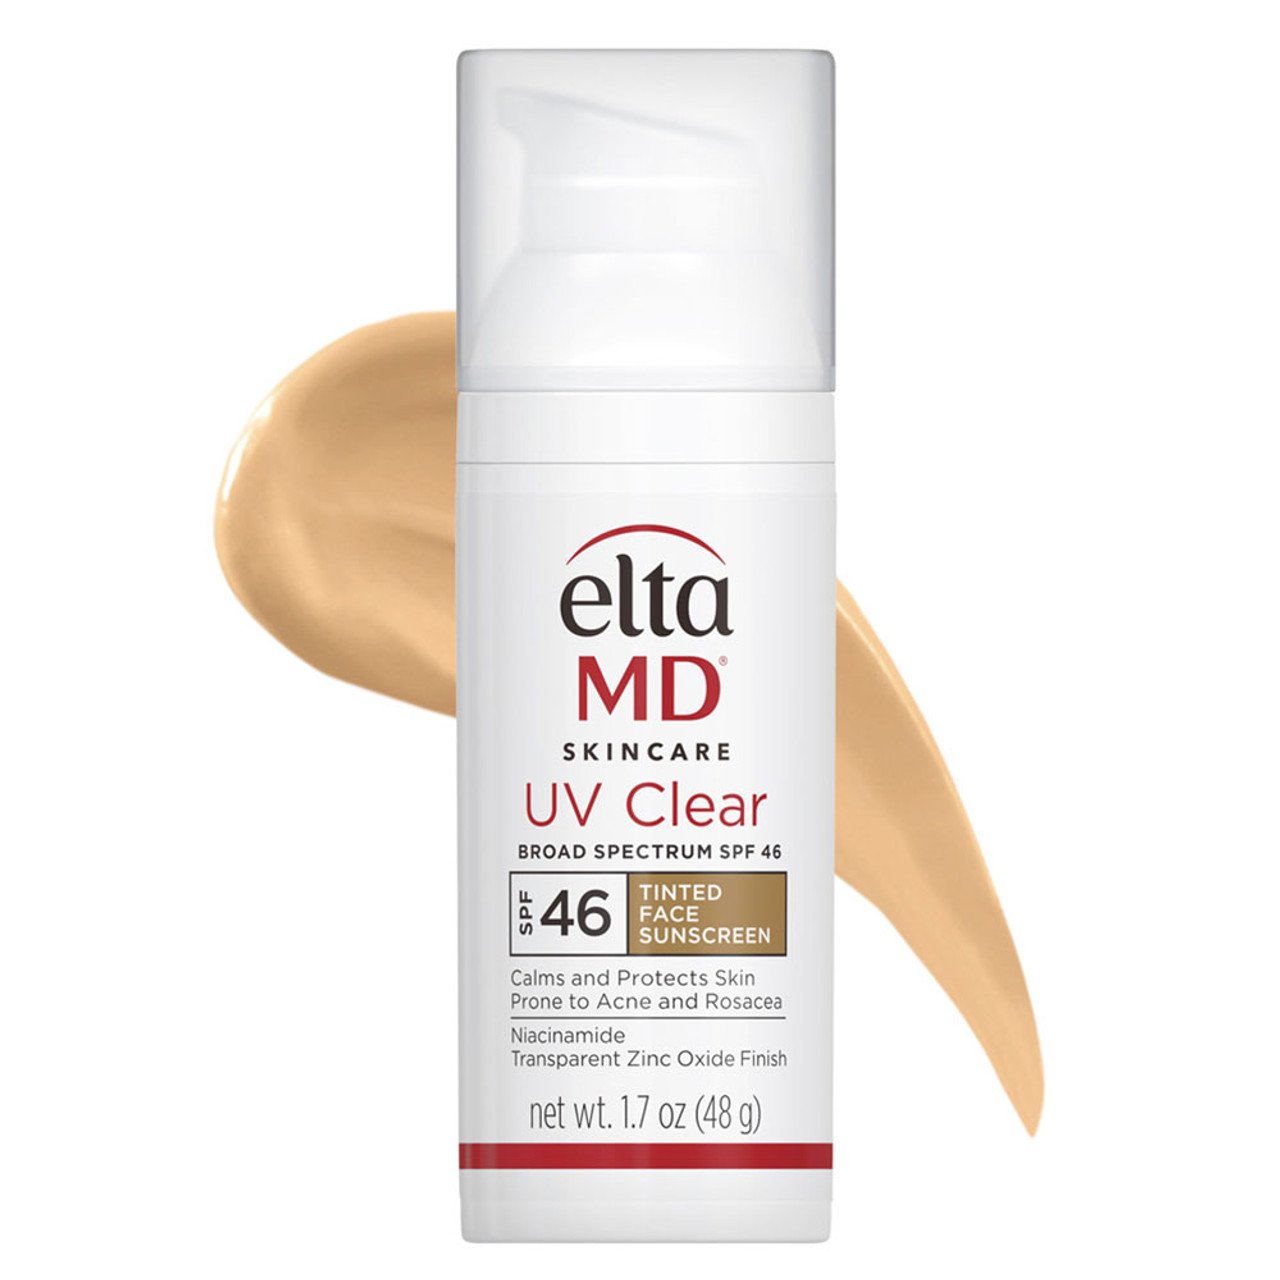 EltaMD UV Clear Broad Spectrum Sunscreen SPF 46